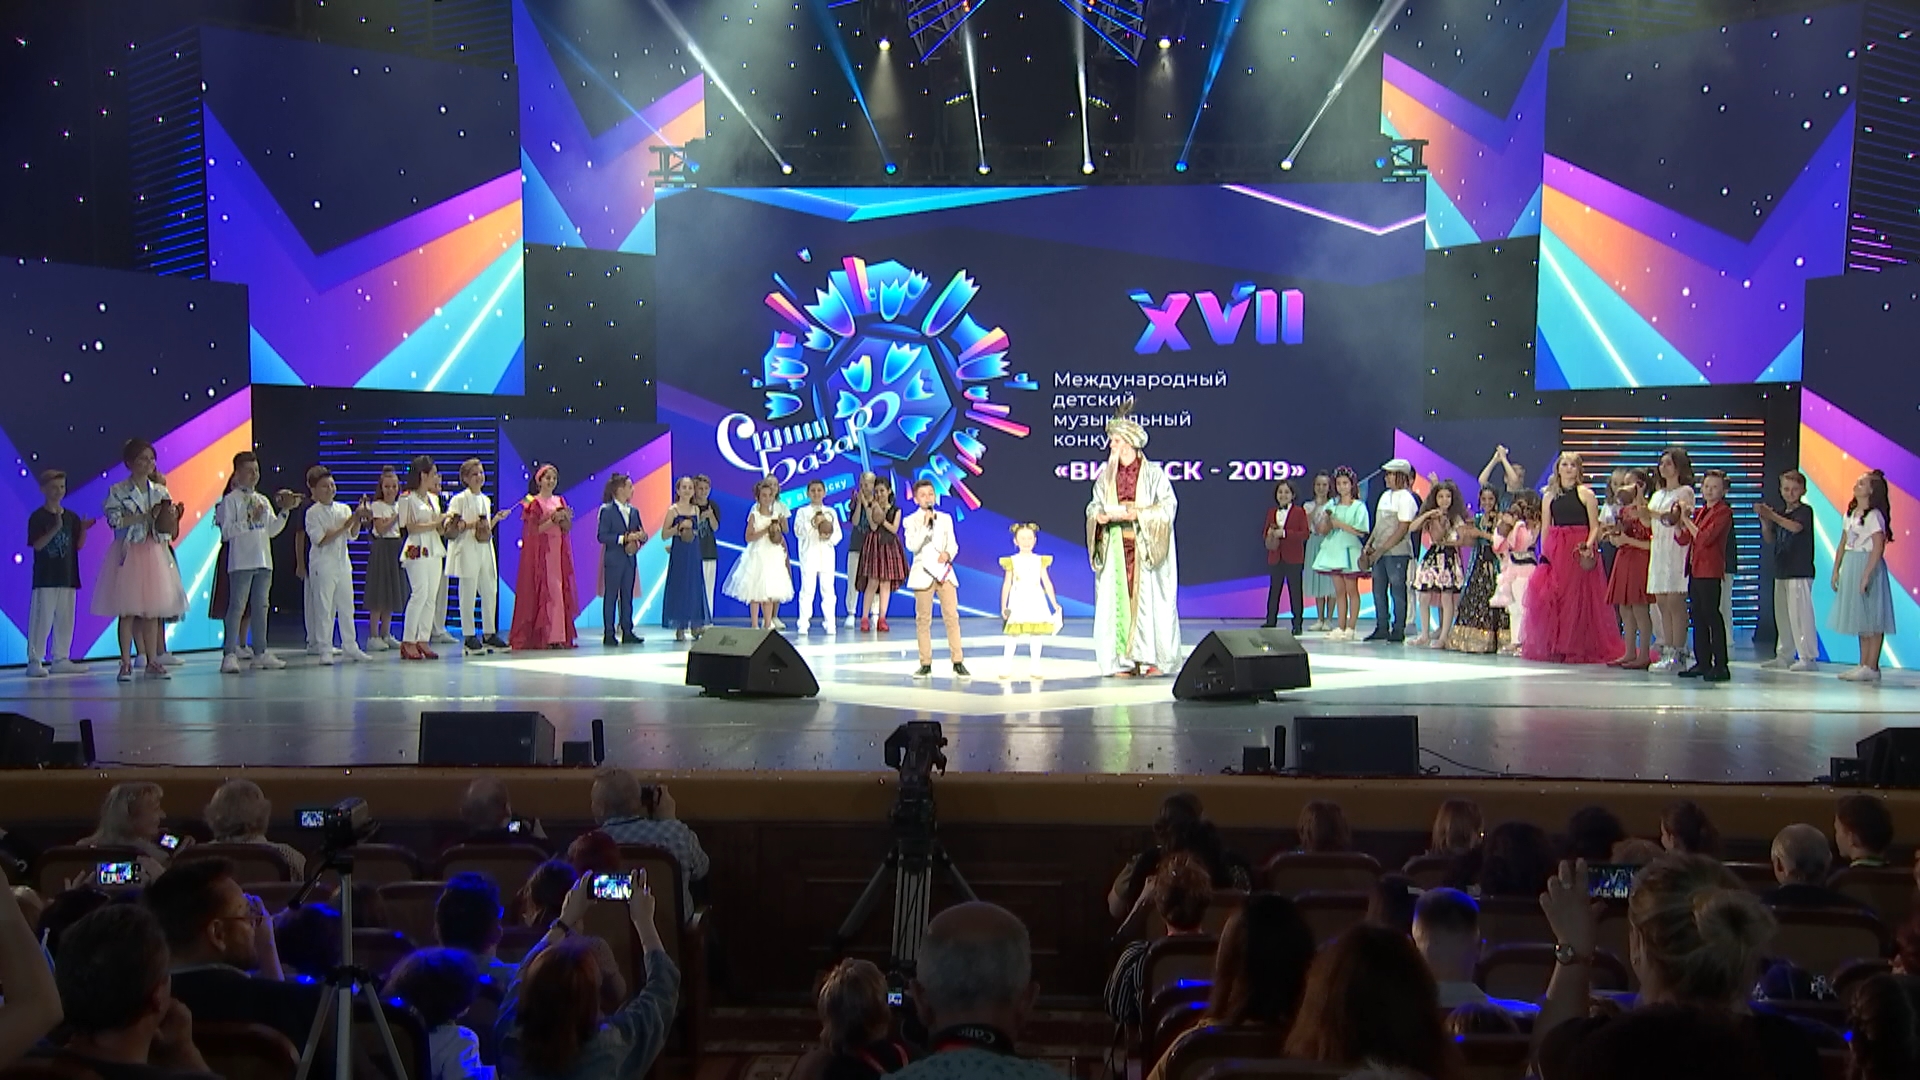 В Витебске второй день XVII Международного детского музыкального конкурса